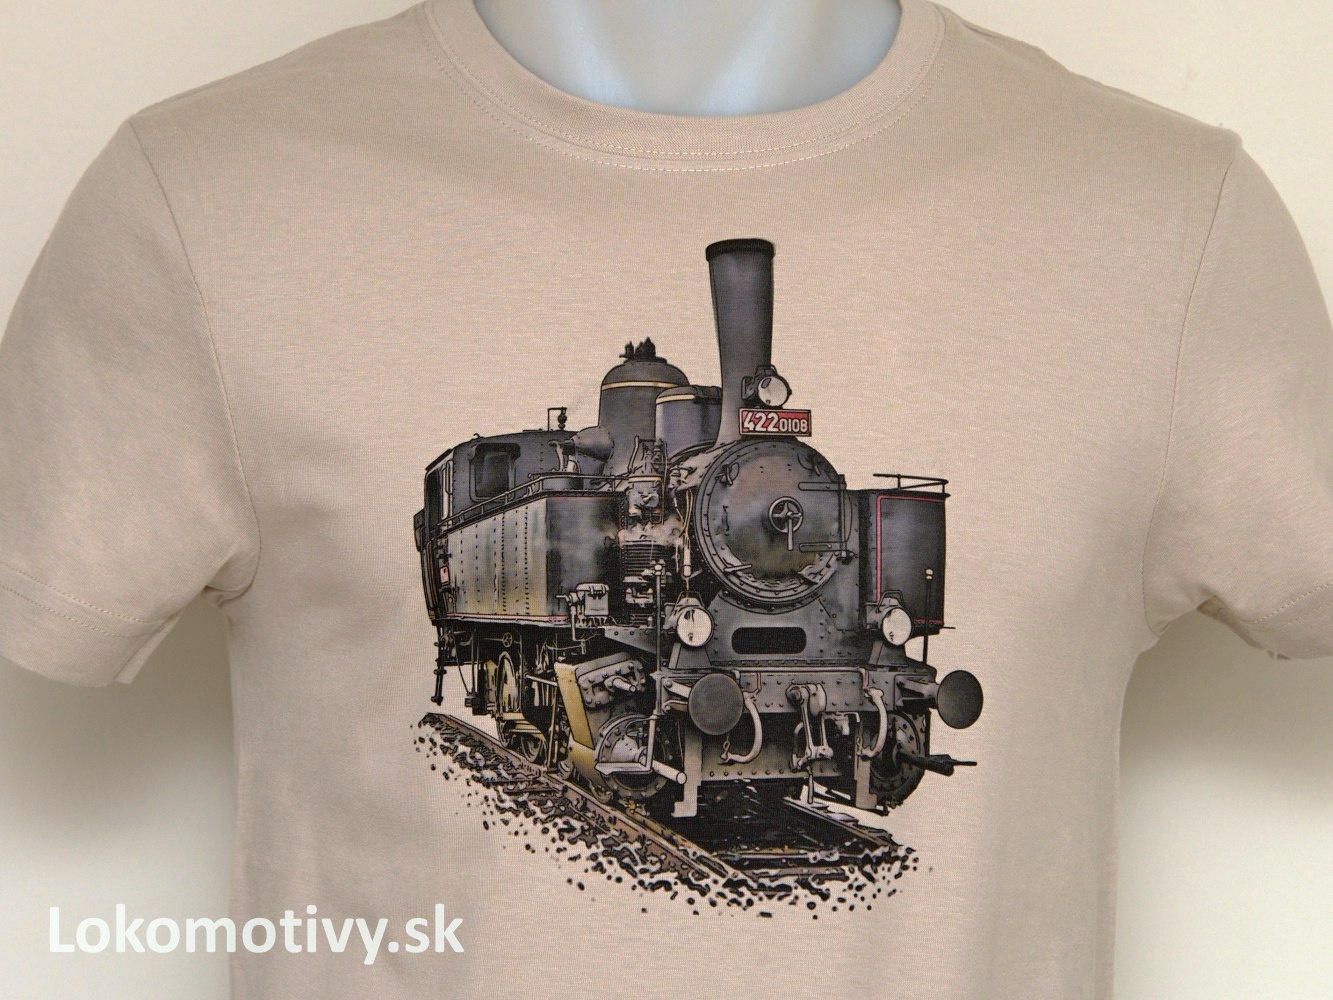 Tričko s lokomotívou Malý býček 422.0108